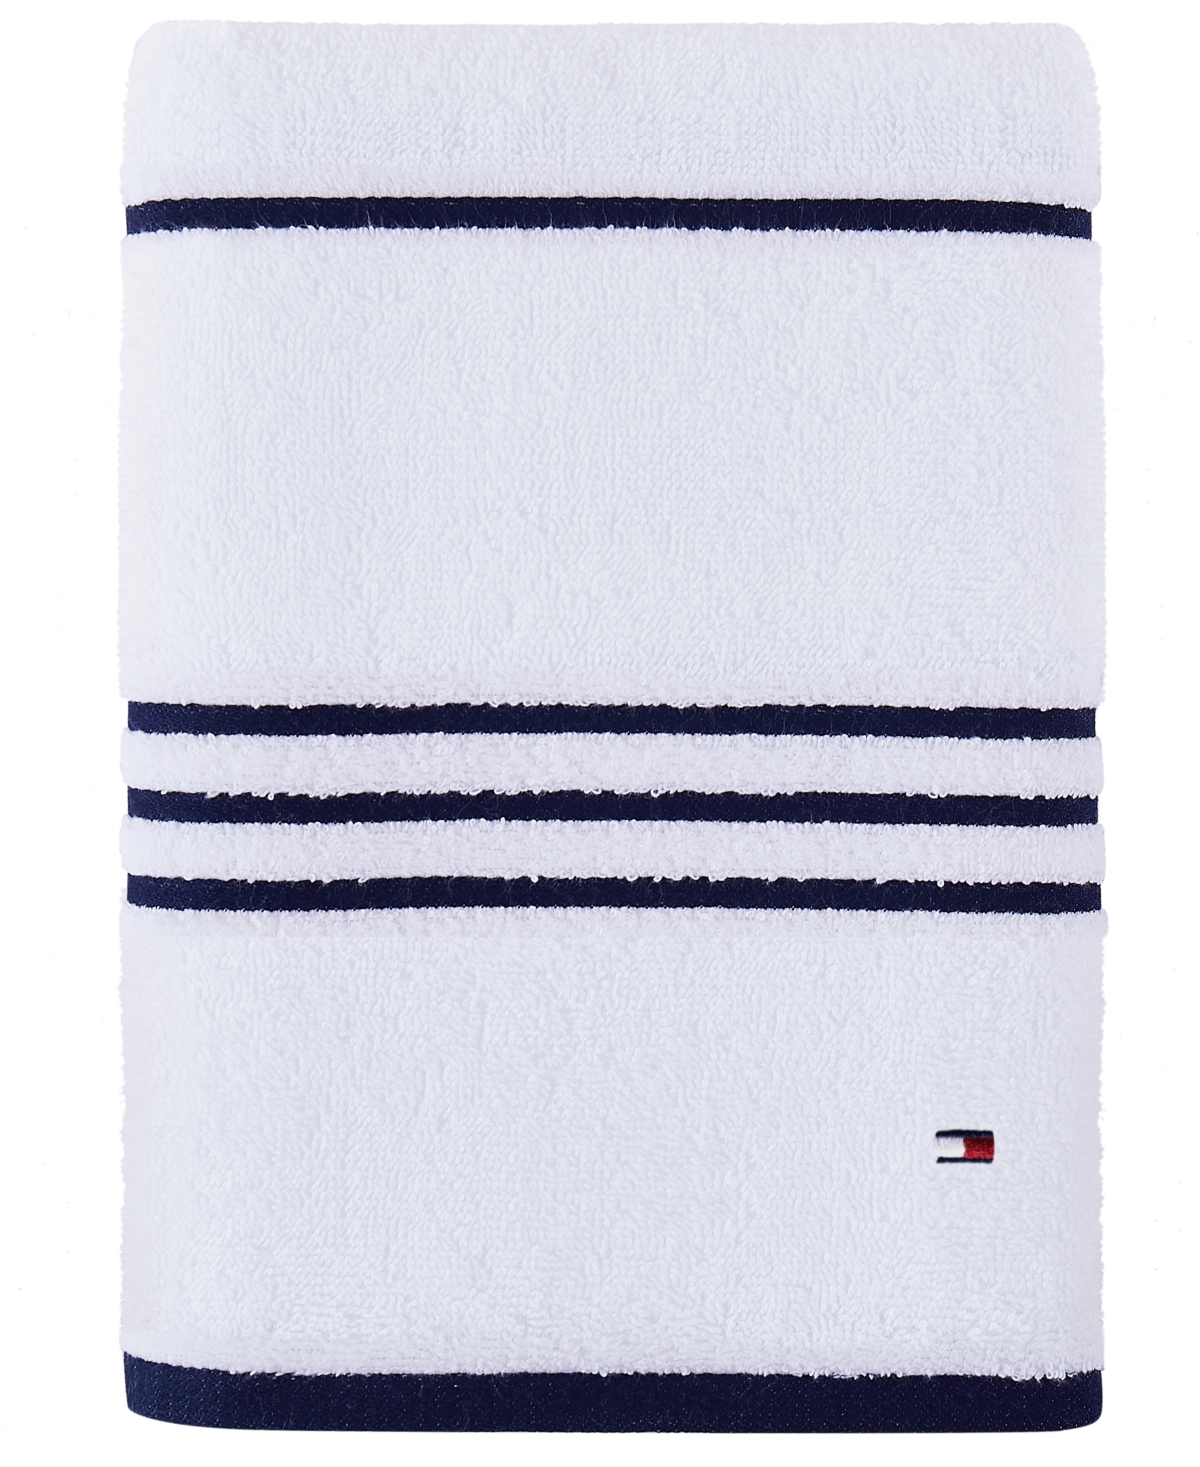 1 × Tommy Hilfiger Bath Towel 100% Cotton 27 X 52 Various Colors Collection 